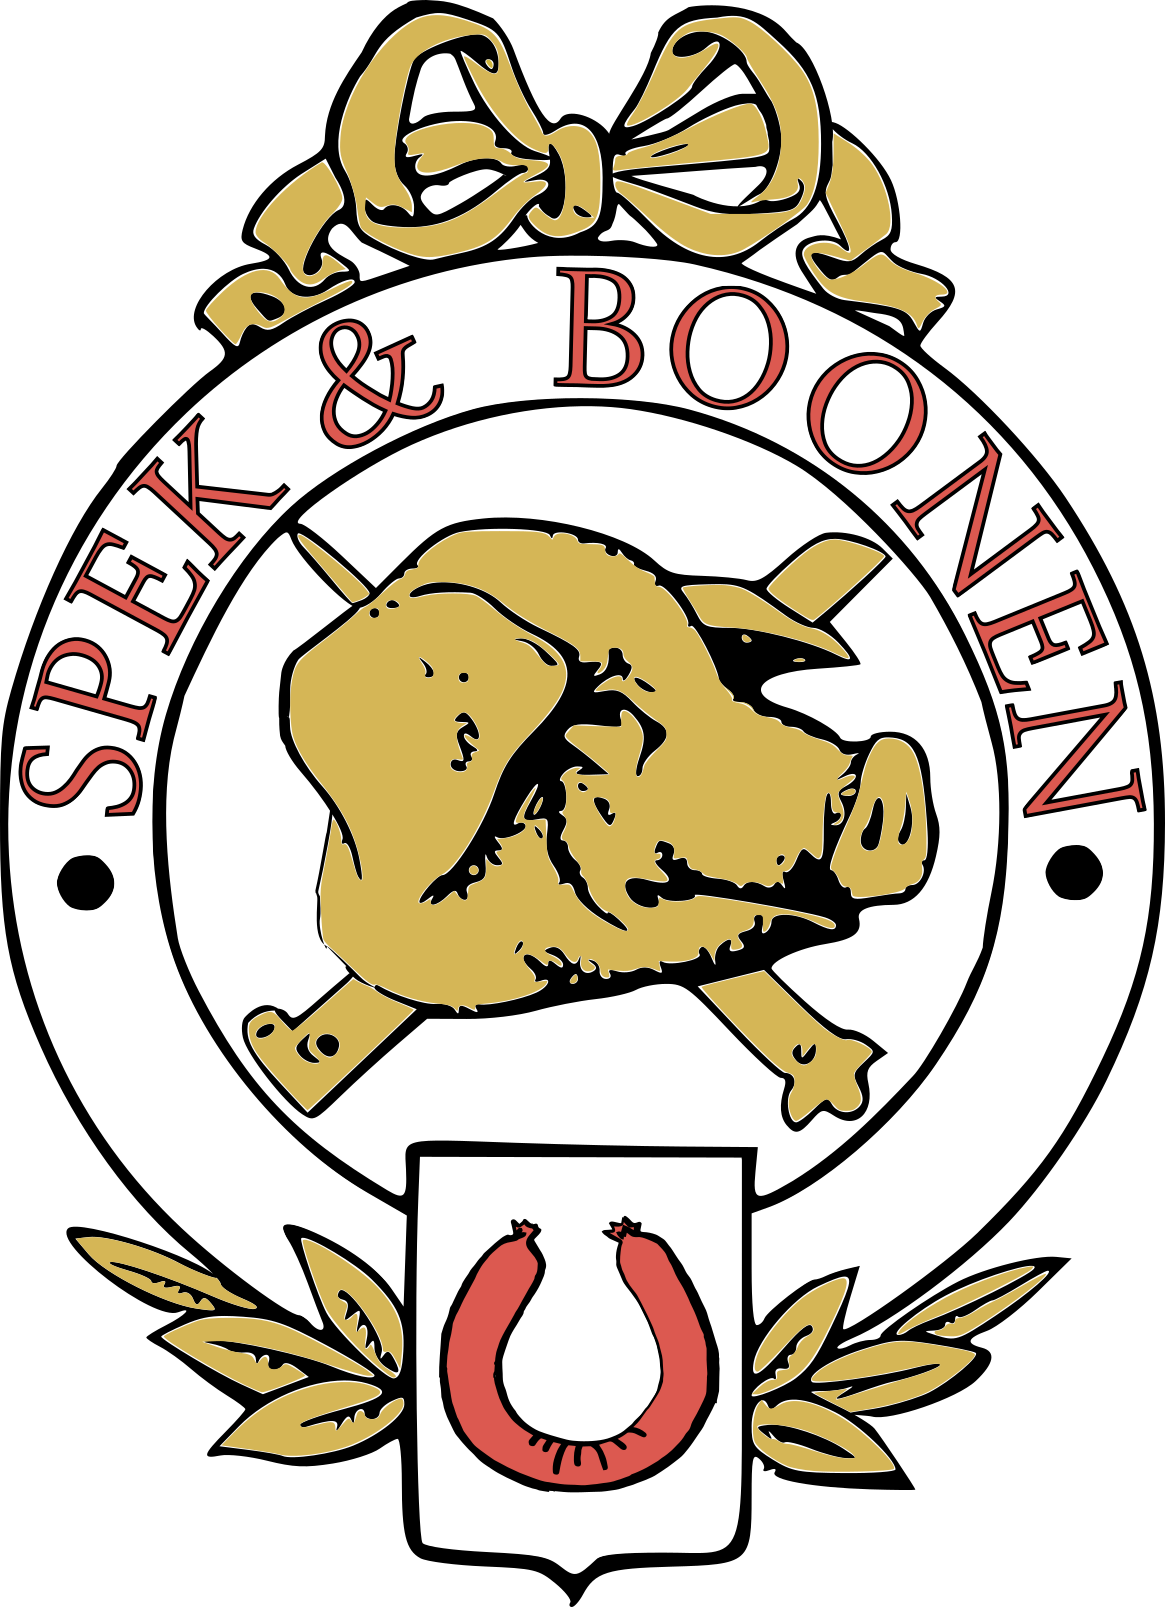 spek.boonen